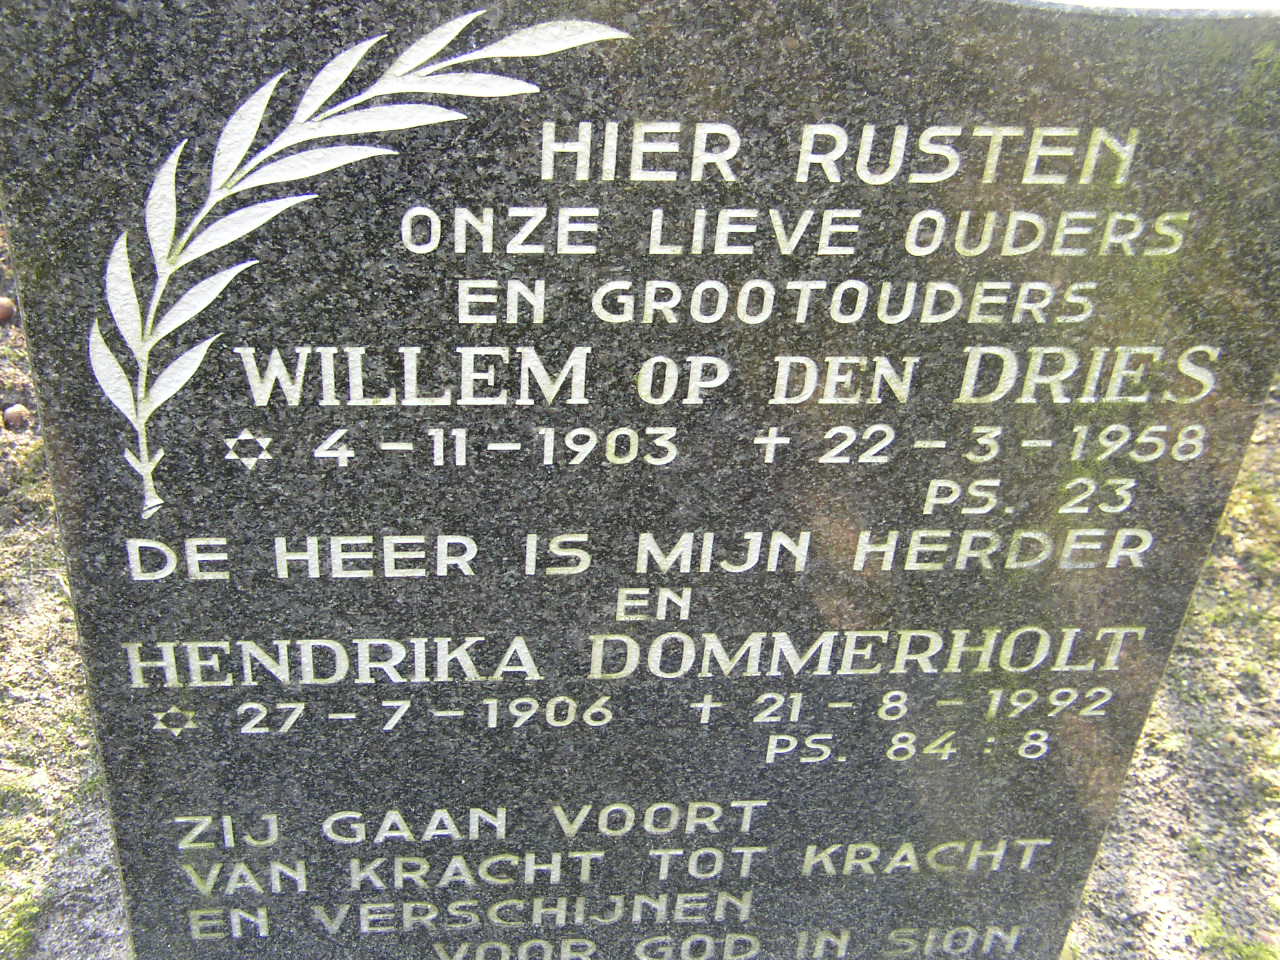 dries_op_den_willem__4-11-1903_grafsteen.jpg